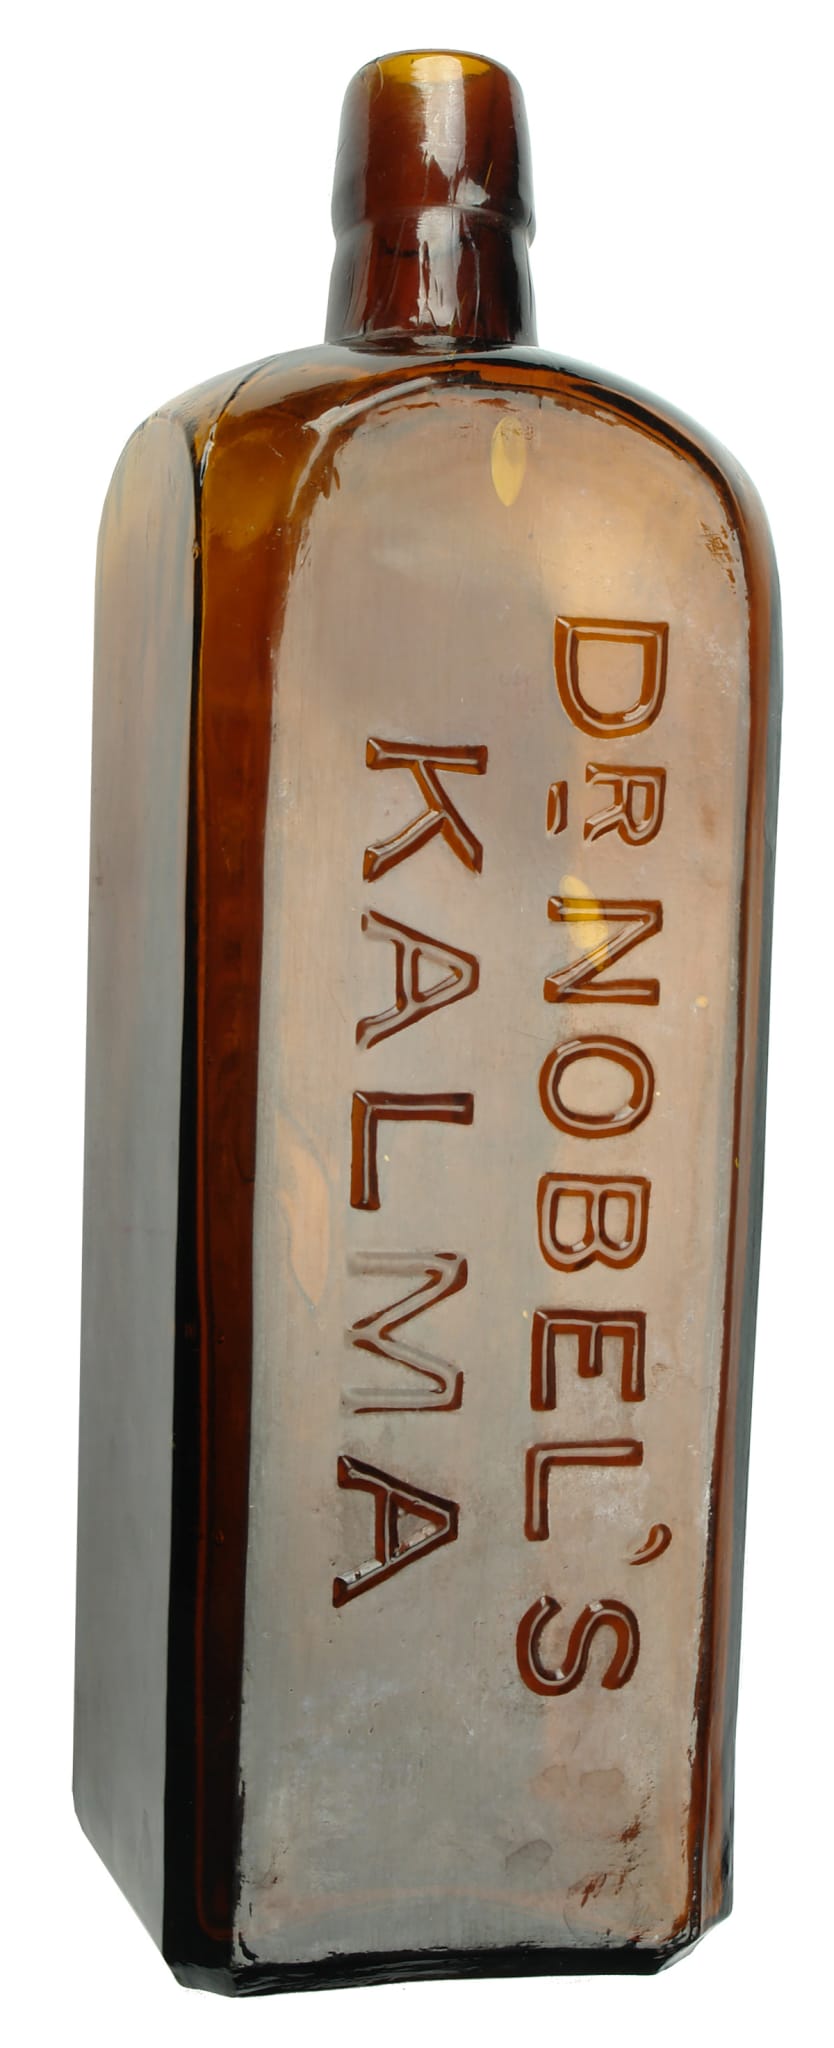 Dr Nobels Kalma Antique Bottle